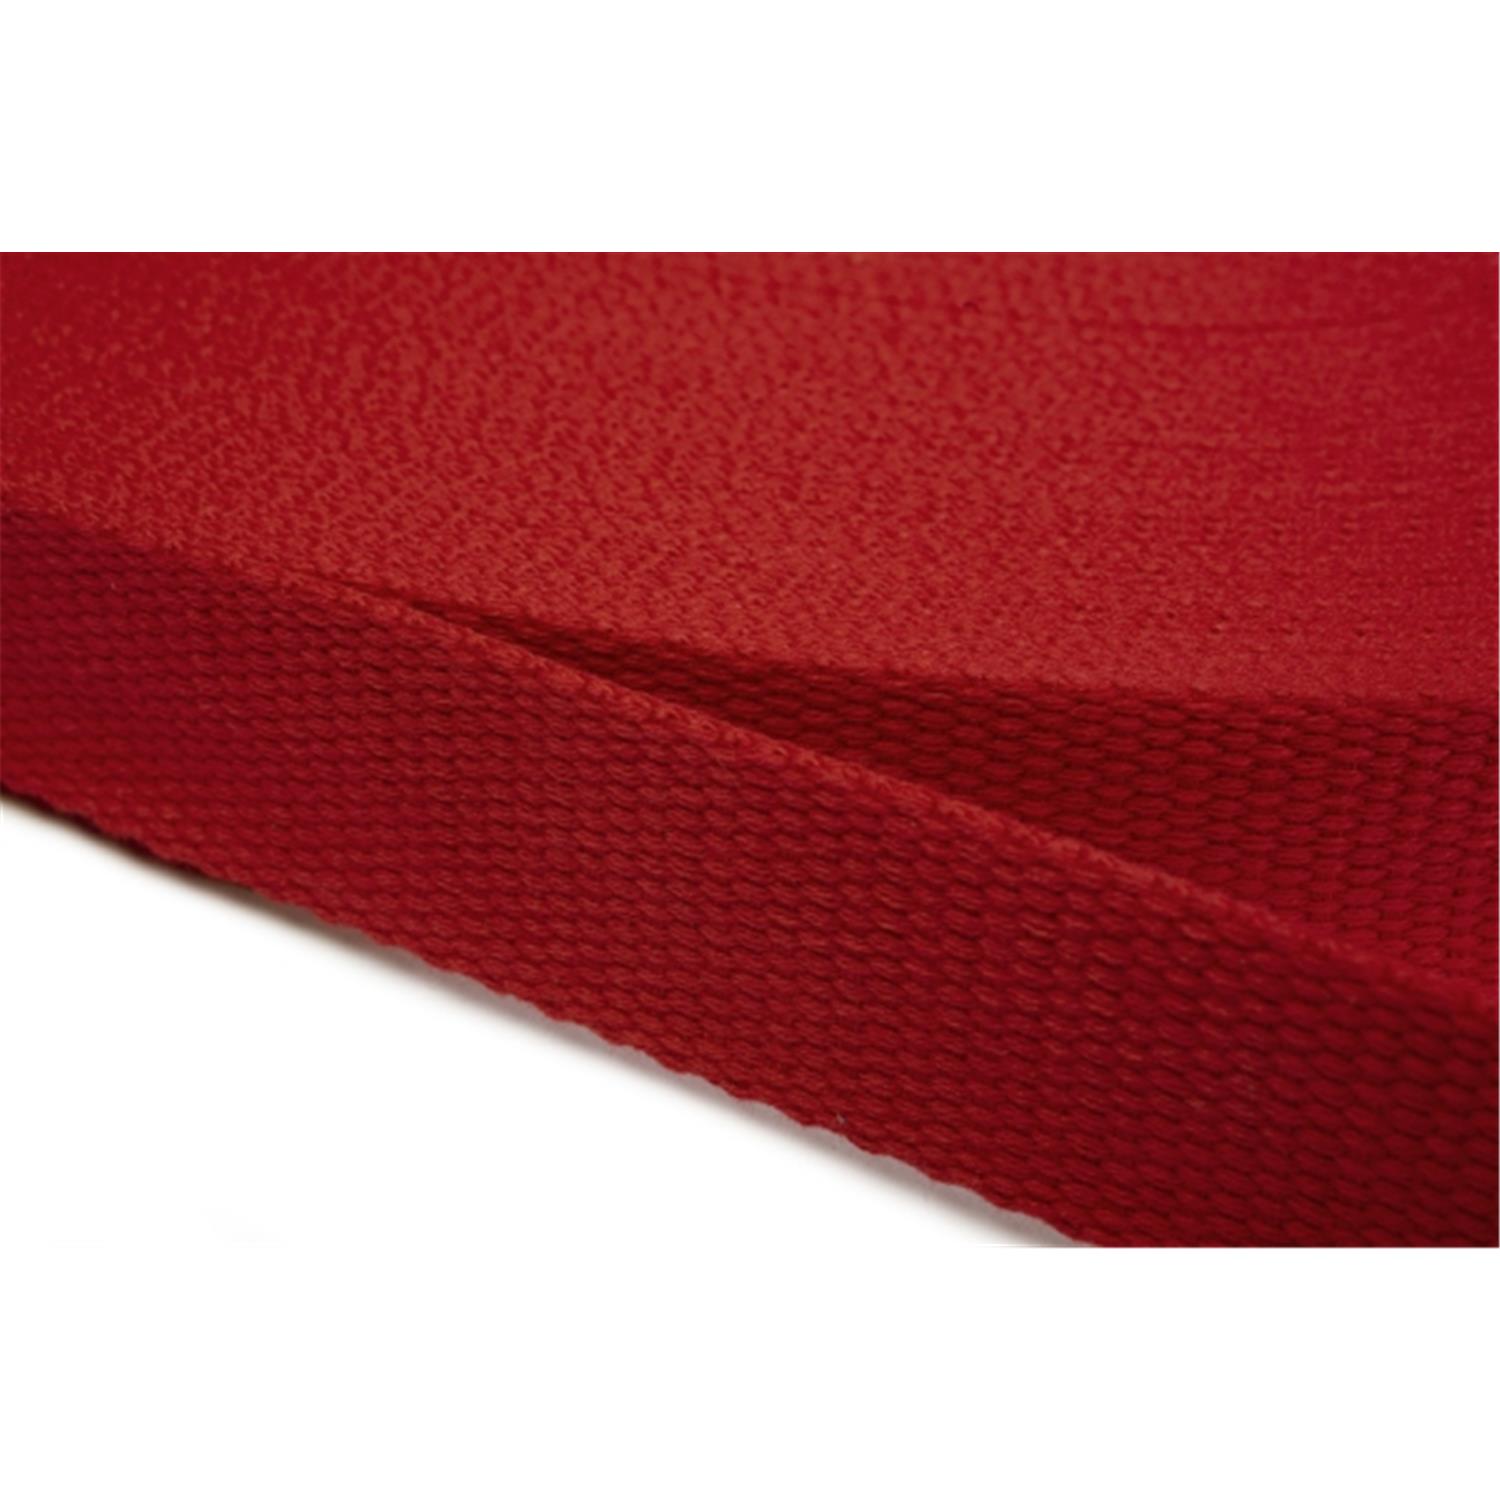 Gurtband aus Baumwolle 30mm in 20 Farben 10 - rot 6 Meter